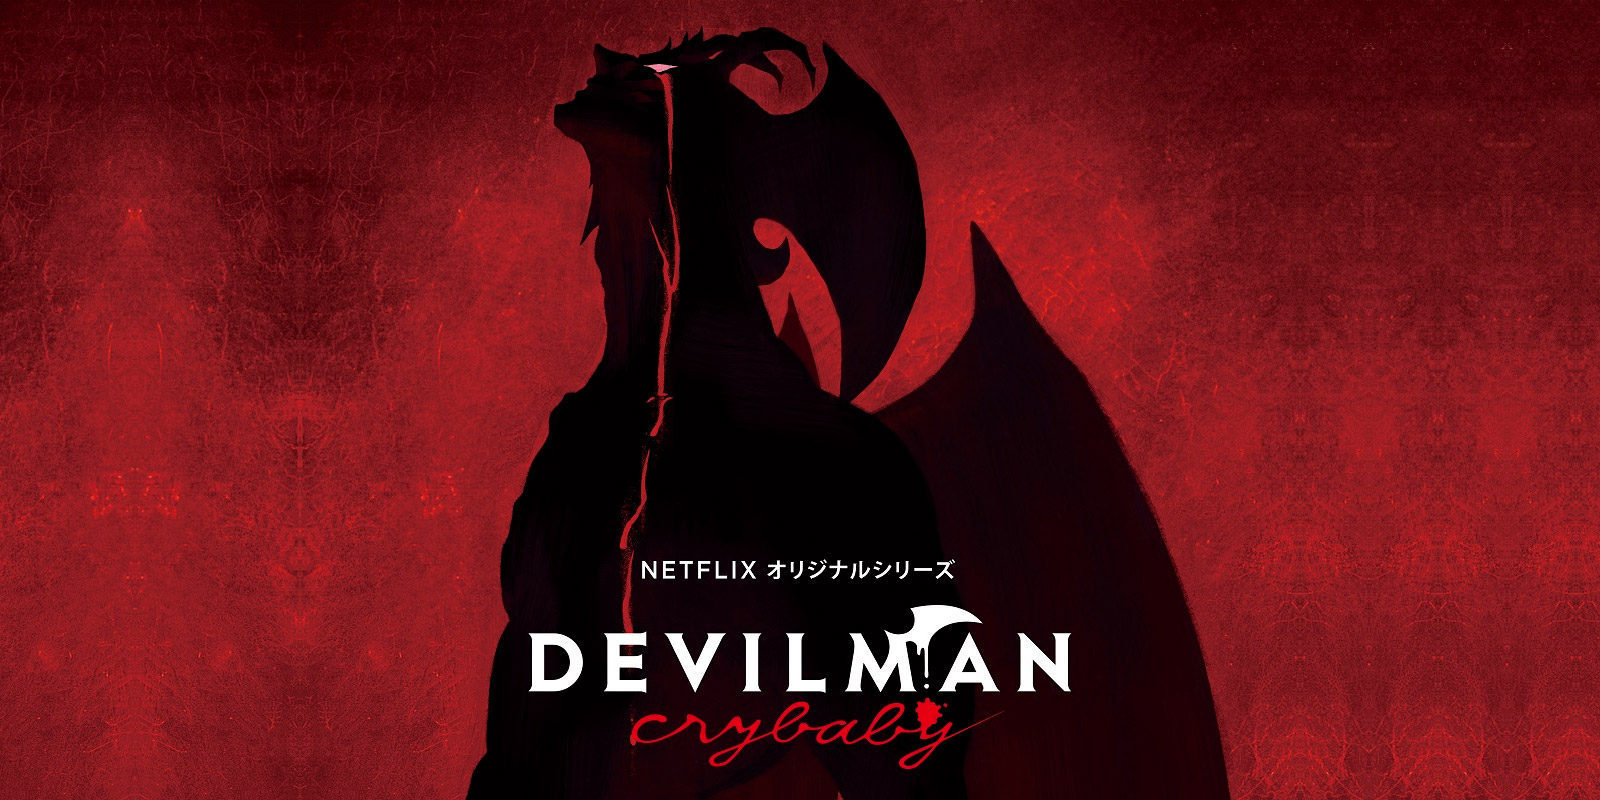 Netflix estrenará el anime 'Devilman Crybaby' en 2018